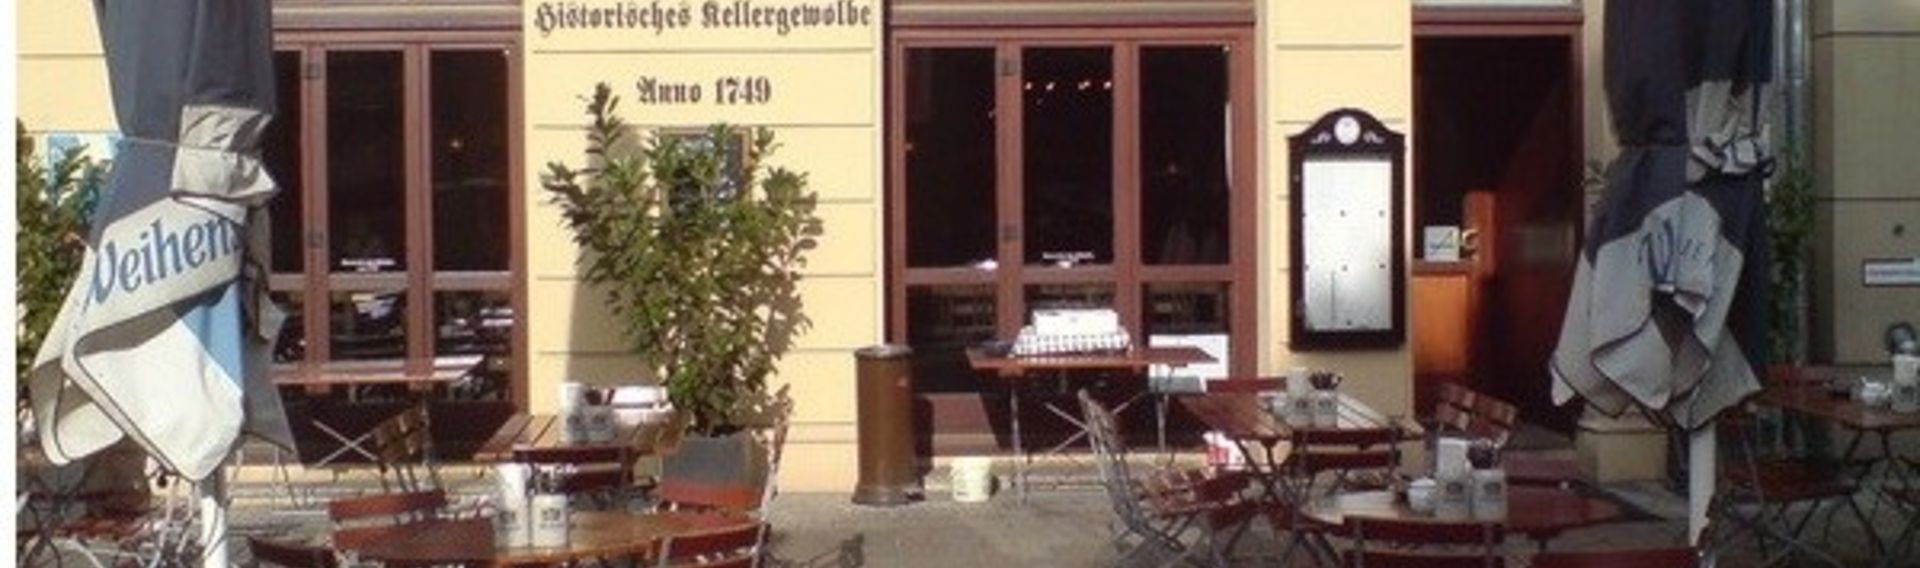 Restaurant Berlin mit Hund – Weihenstephaner